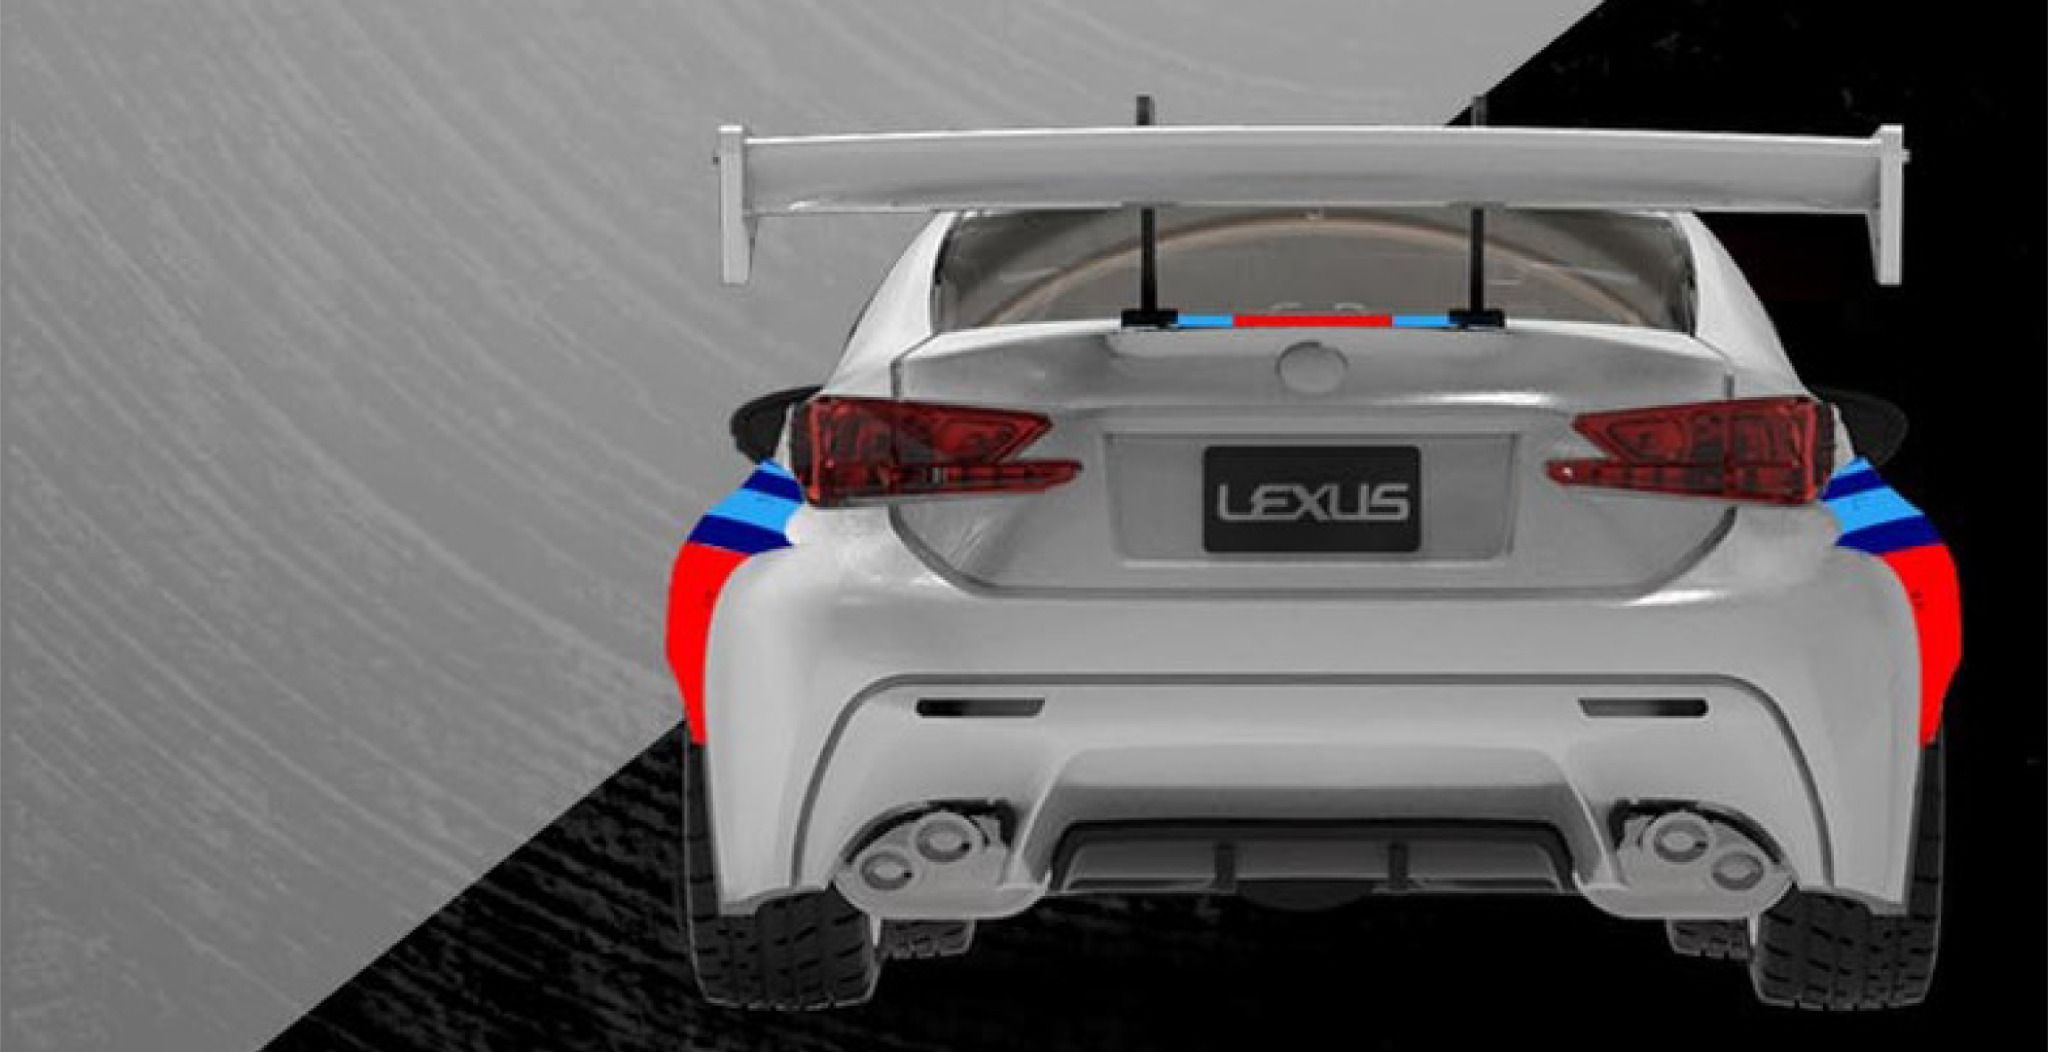  Mô hình xe Lexus Martini Racing white tỉ lệ 1:64 TM641811 Time micro 